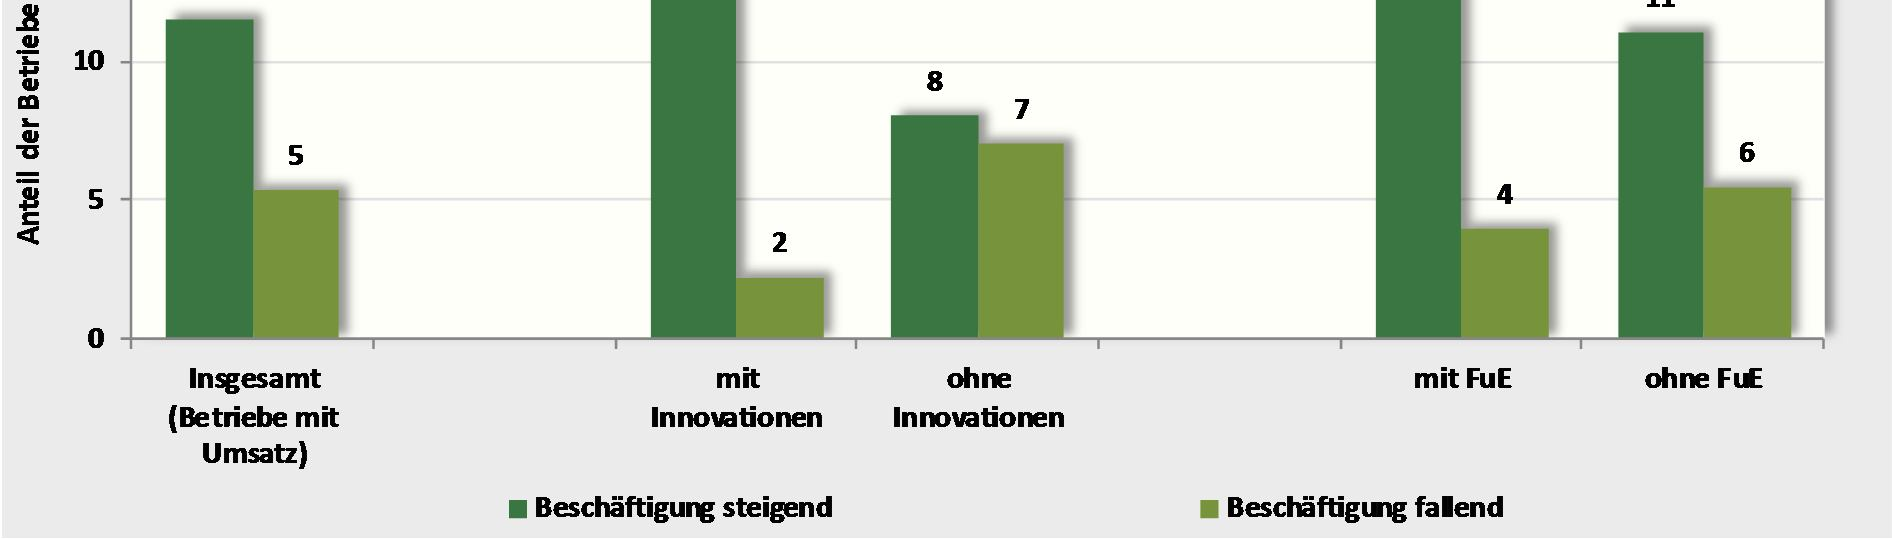 Abbildung 45: Beschäftigungserwartungen für 2016 nach Innovations- und FuE-Aktivitäten der Betriebe in Sachsen (alle Betriebe mit Umsatz) Quelle: IAB-Betriebspanel, Welle 2015 Zusammenfassend kann